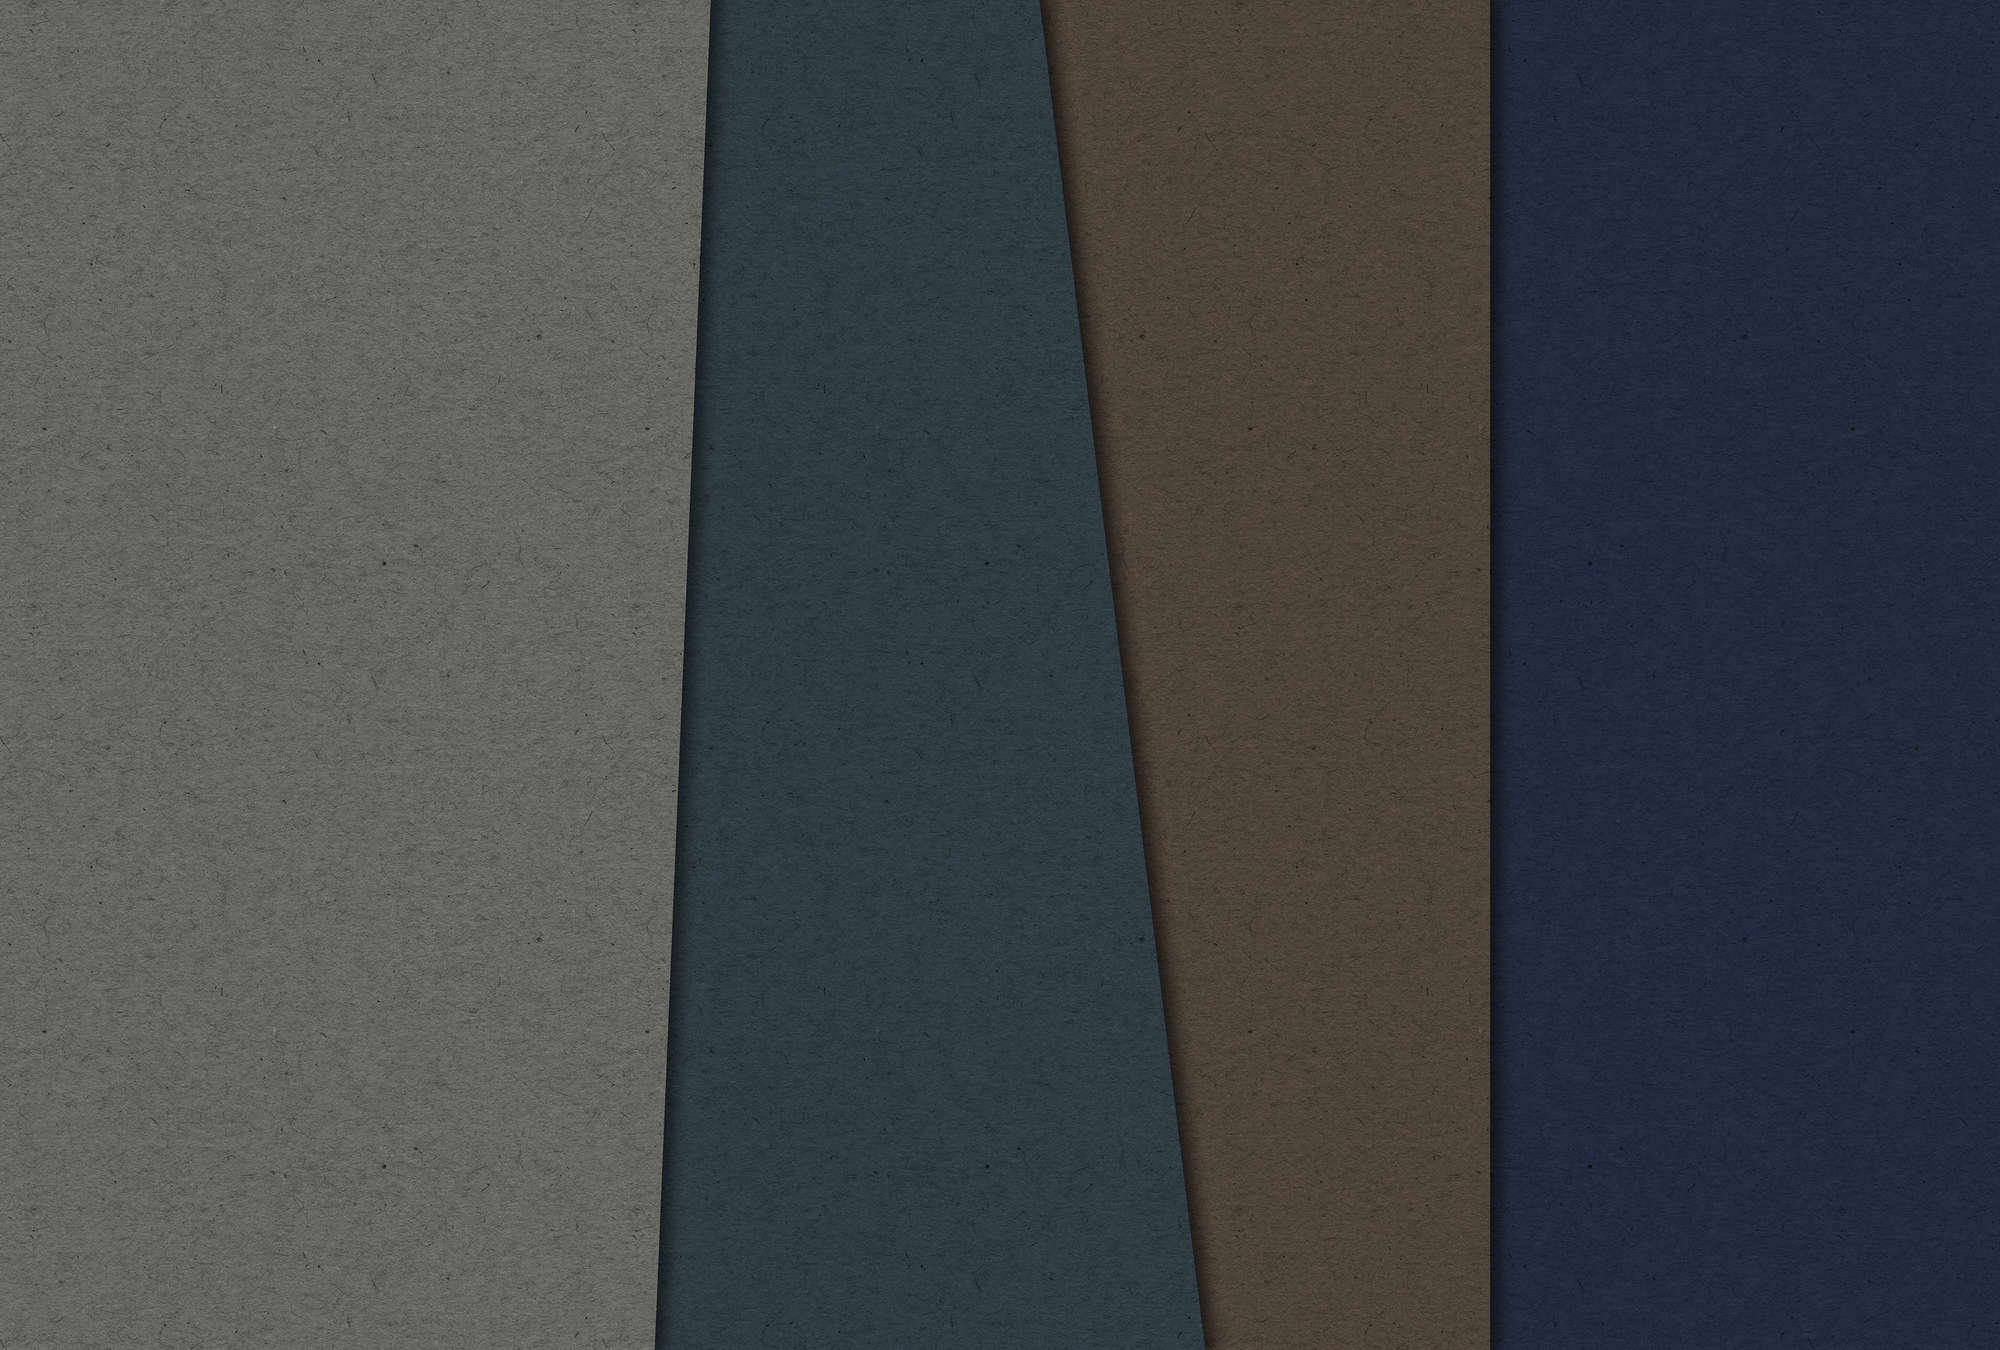             Layered Cardboard 2 - Papel pintado fotográfico en estructura de cartón con campos de color oscuro - Azul, Marrón | Vellón liso mate
        